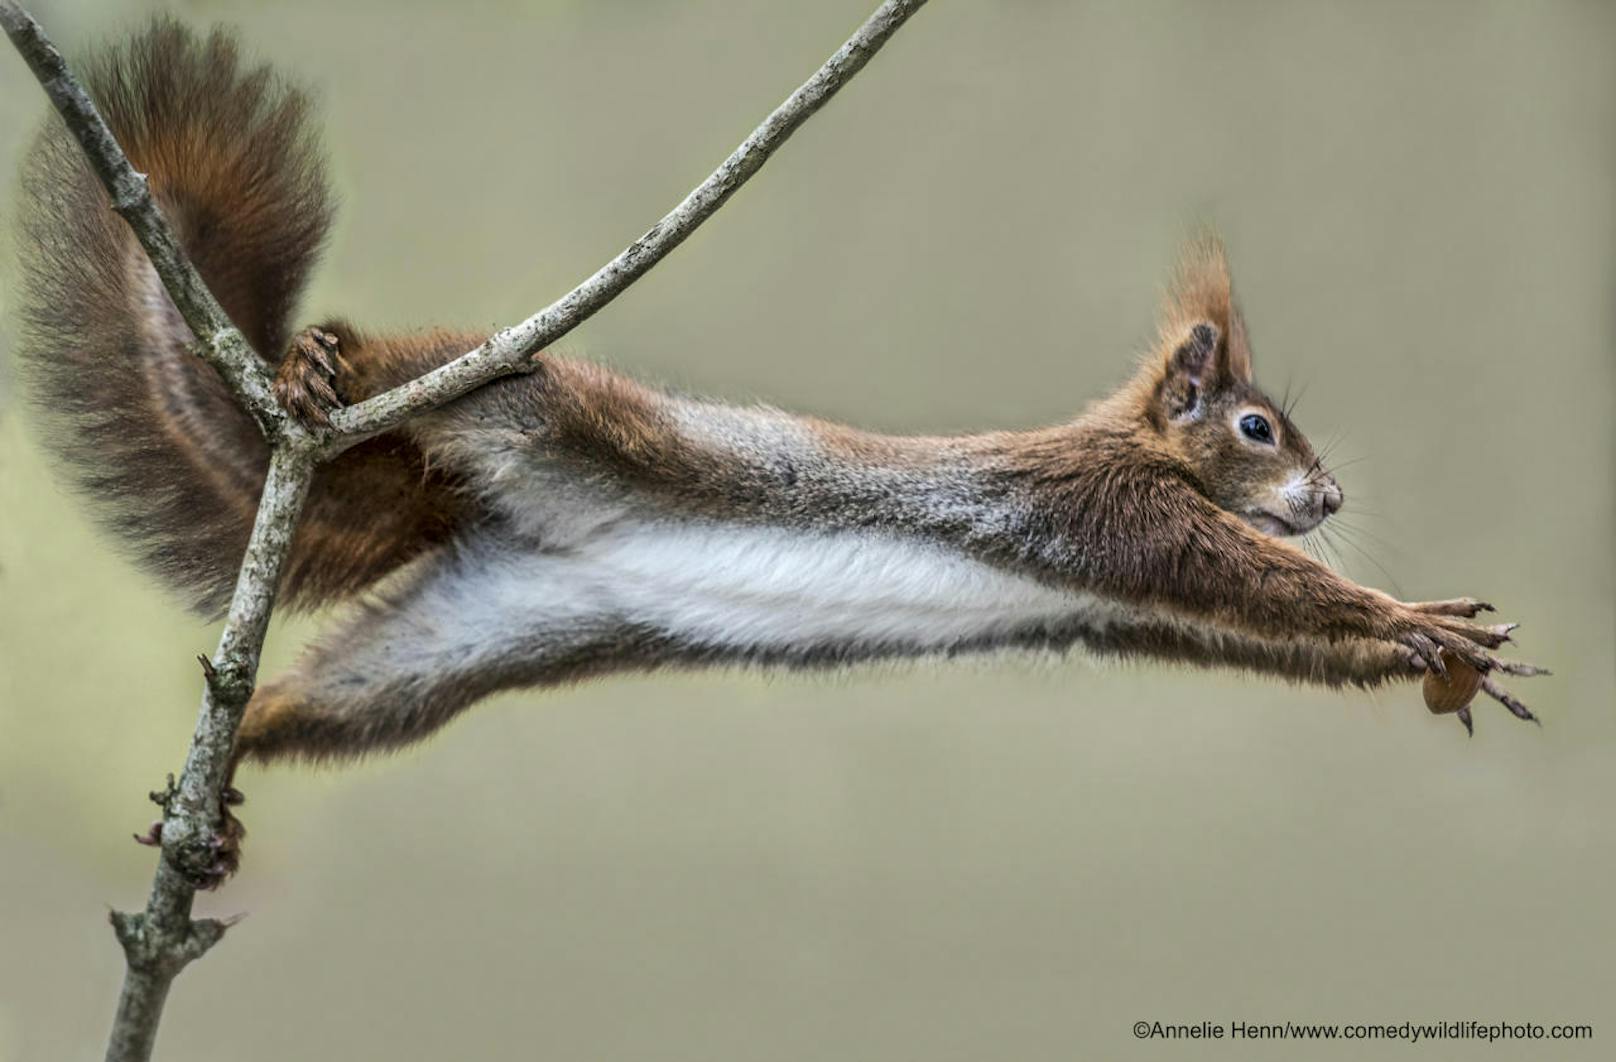 <b>Eichhörnchen krallt sich gerade eine Nuss</b>

"Catch me if You Can" von Annelie Henn
Ort: Deutschland